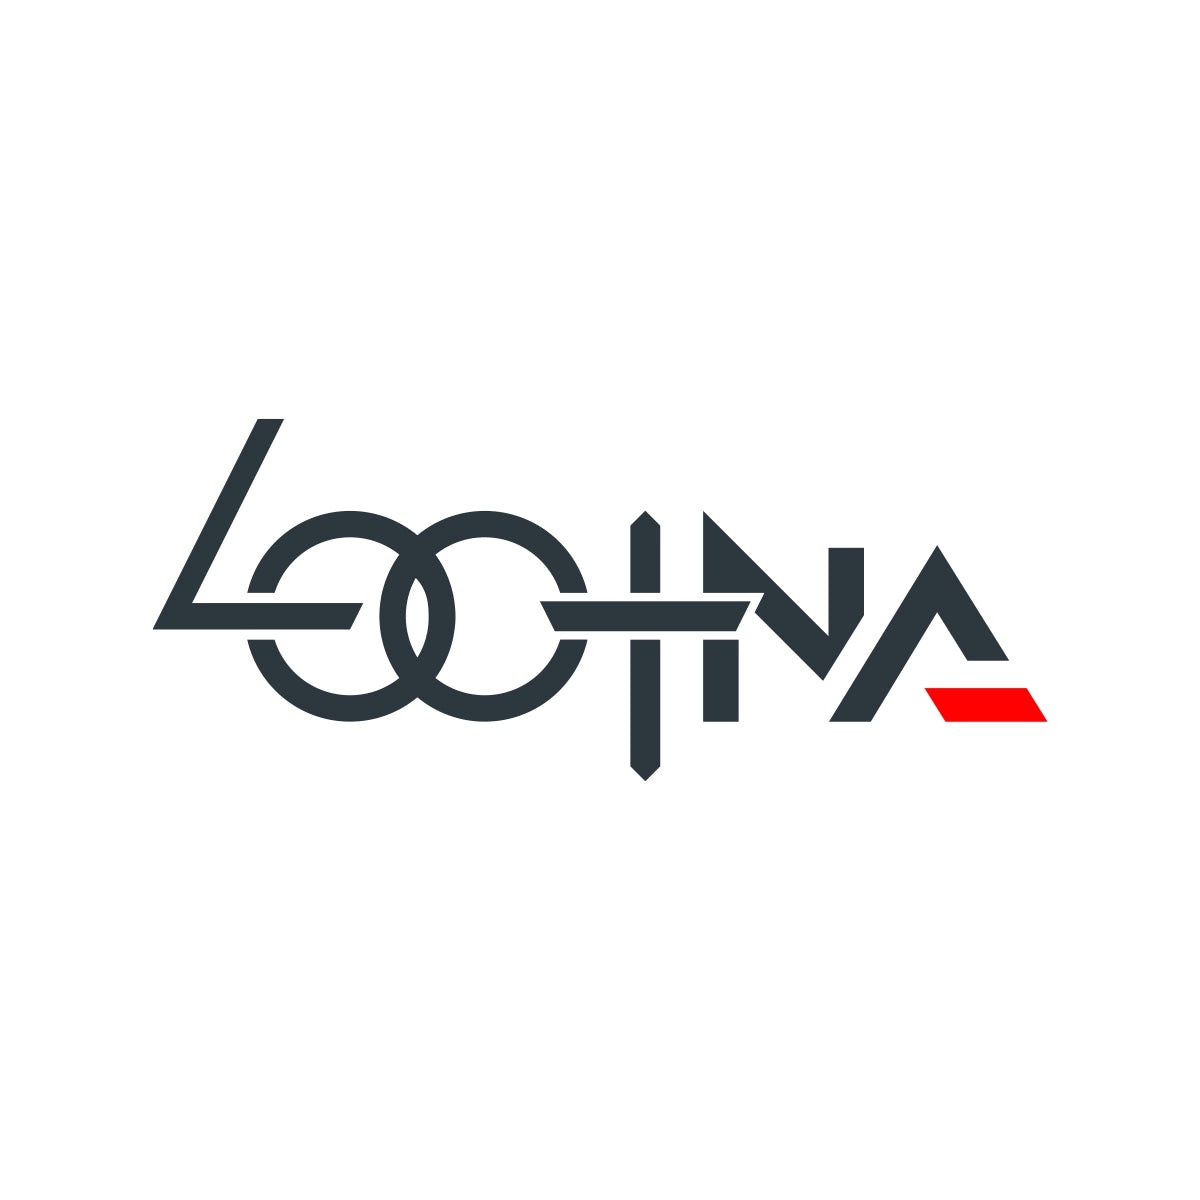 lootna.com